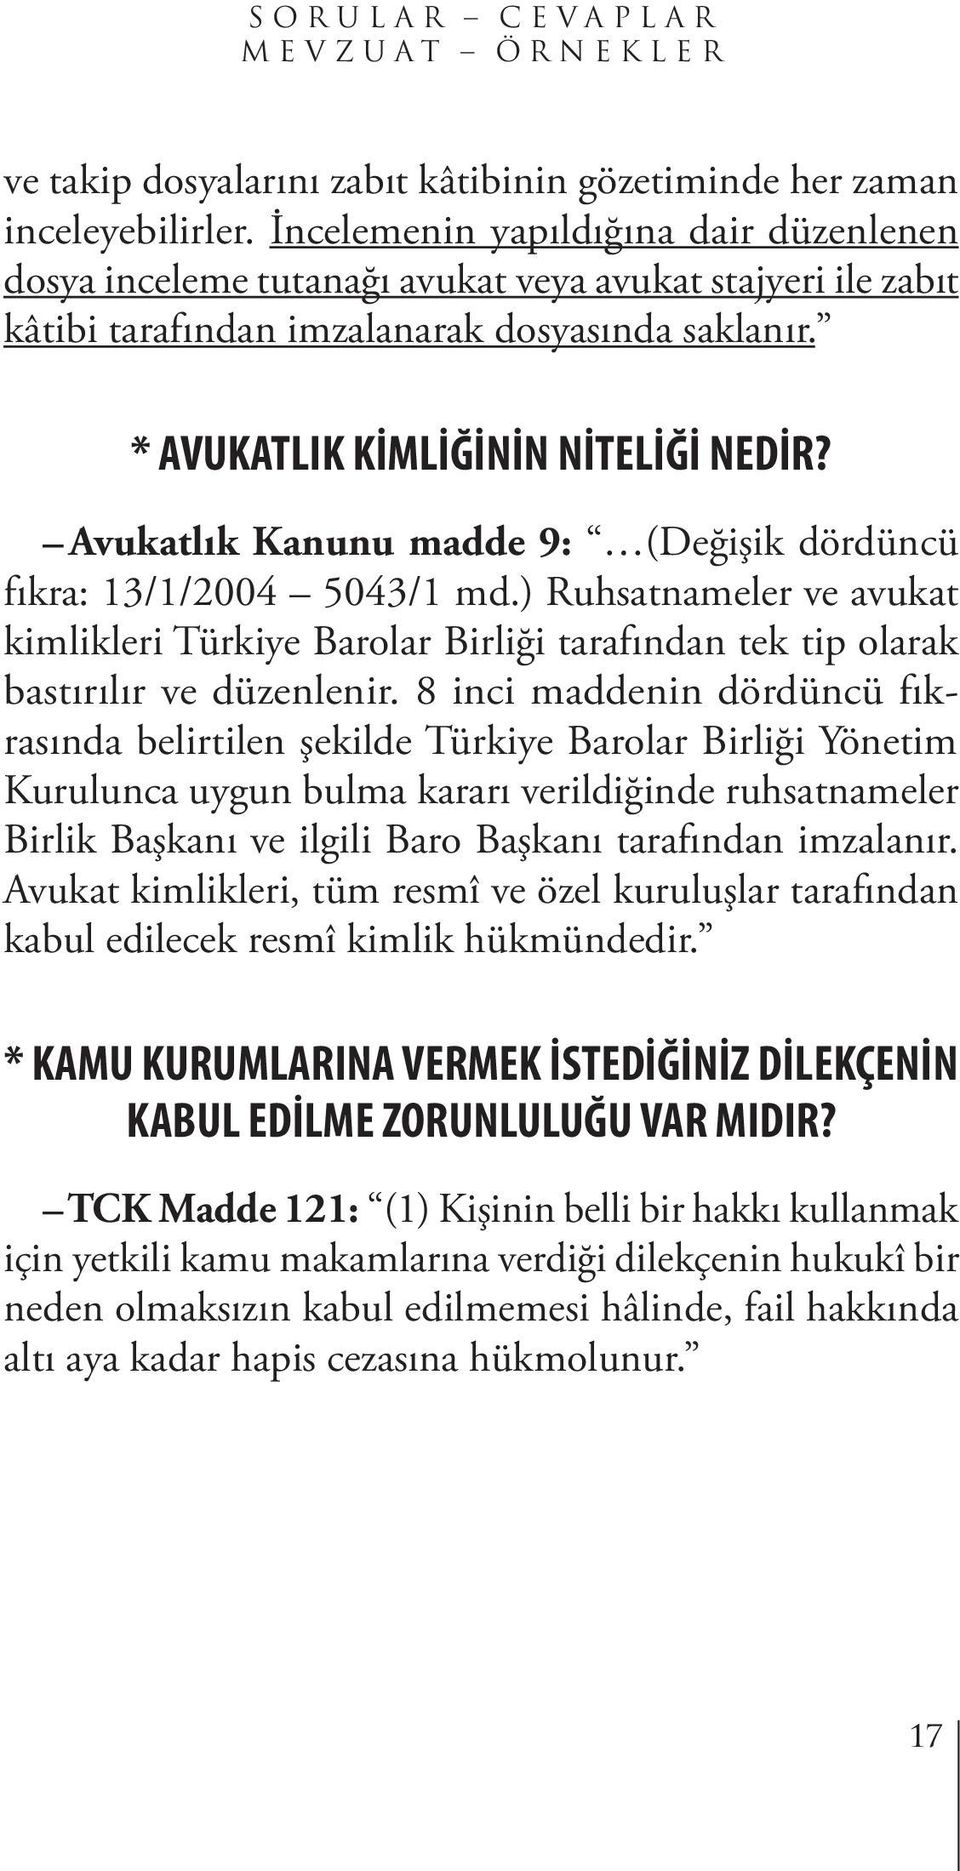 Avukatlık Kanunu madde 9: (Değişik dördüncü fıkra: 13/1/2004 5043/1 md.) Ruhsatnameler ve avukat kimlikleri Türkiye Barolar Birliği tarafından tek tip olarak bastırılır ve düzenlenir.